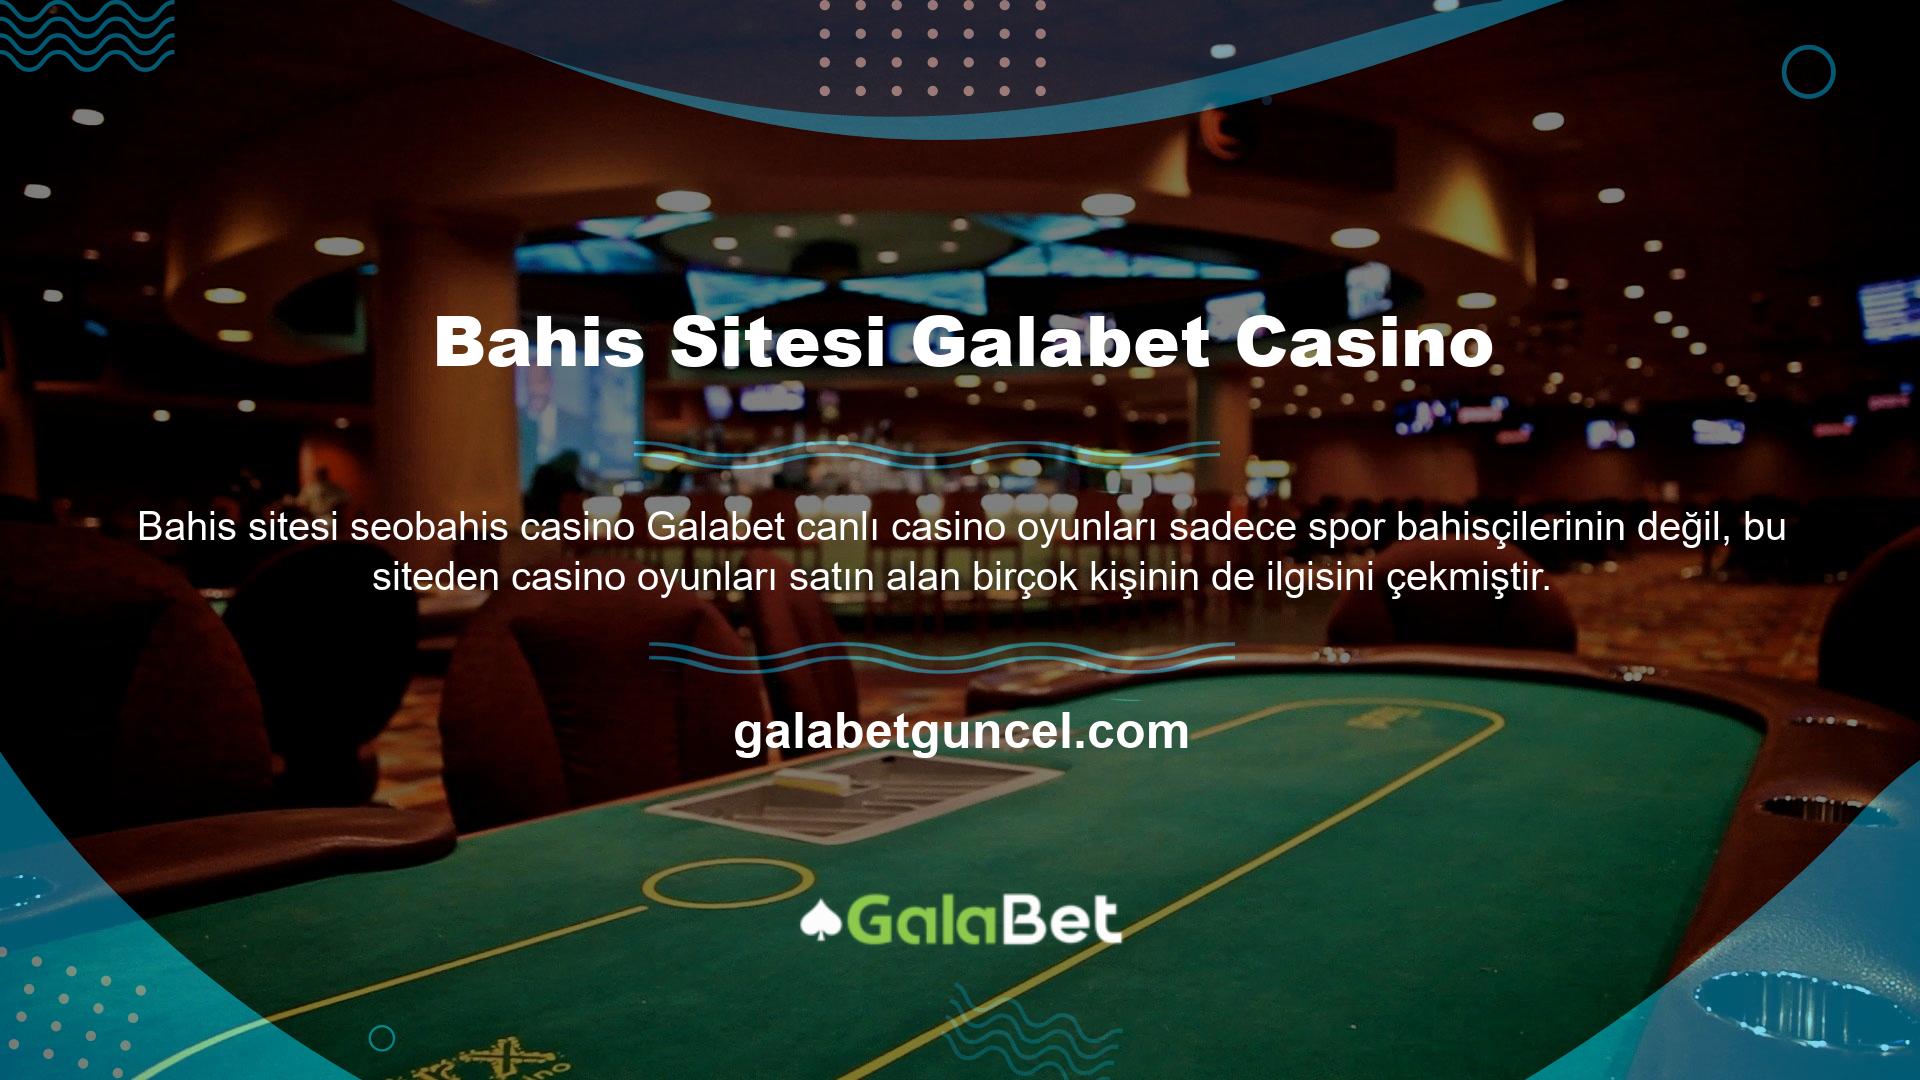 Galabet Casino'daki oyunların bir kısmı, dünyanın en ünlü casino oyunlarından bazılarıyla müşterilerini memnun etmeyi başarmıştır